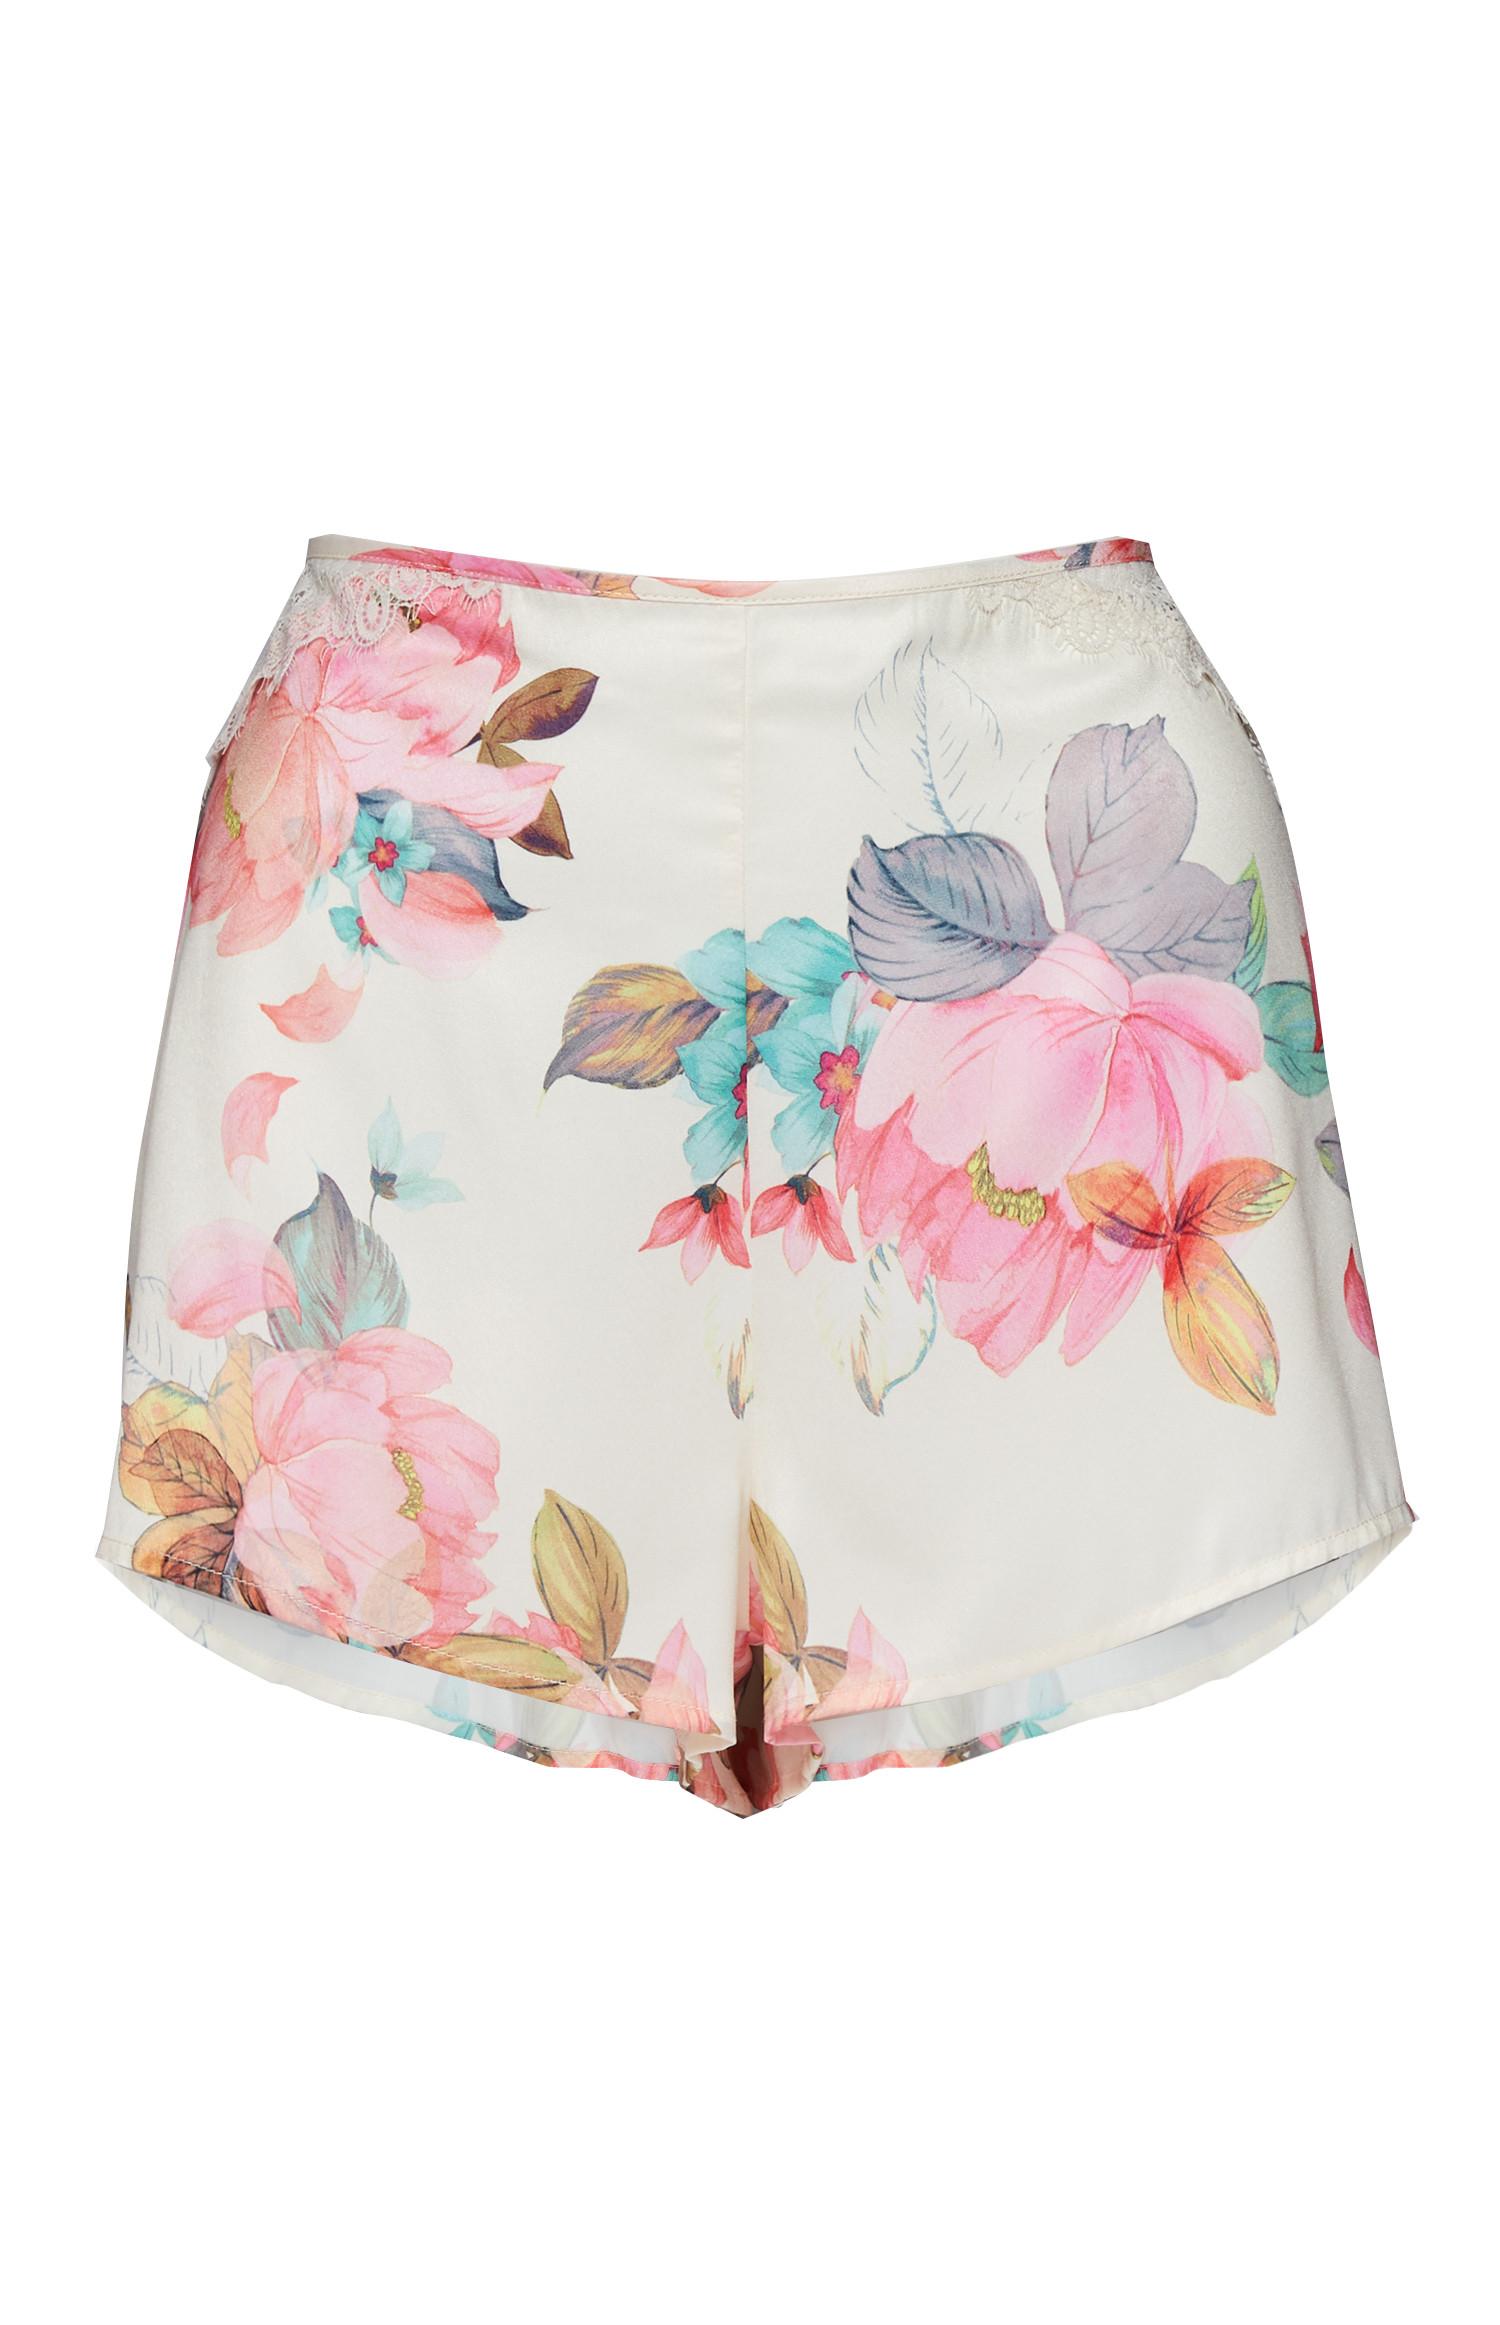 Pantalón corto blanco de flores | Pijama para | Pijamas para | Ropa para | Nuestra línea de moda femenina | Todos los productos Primark | Primark España